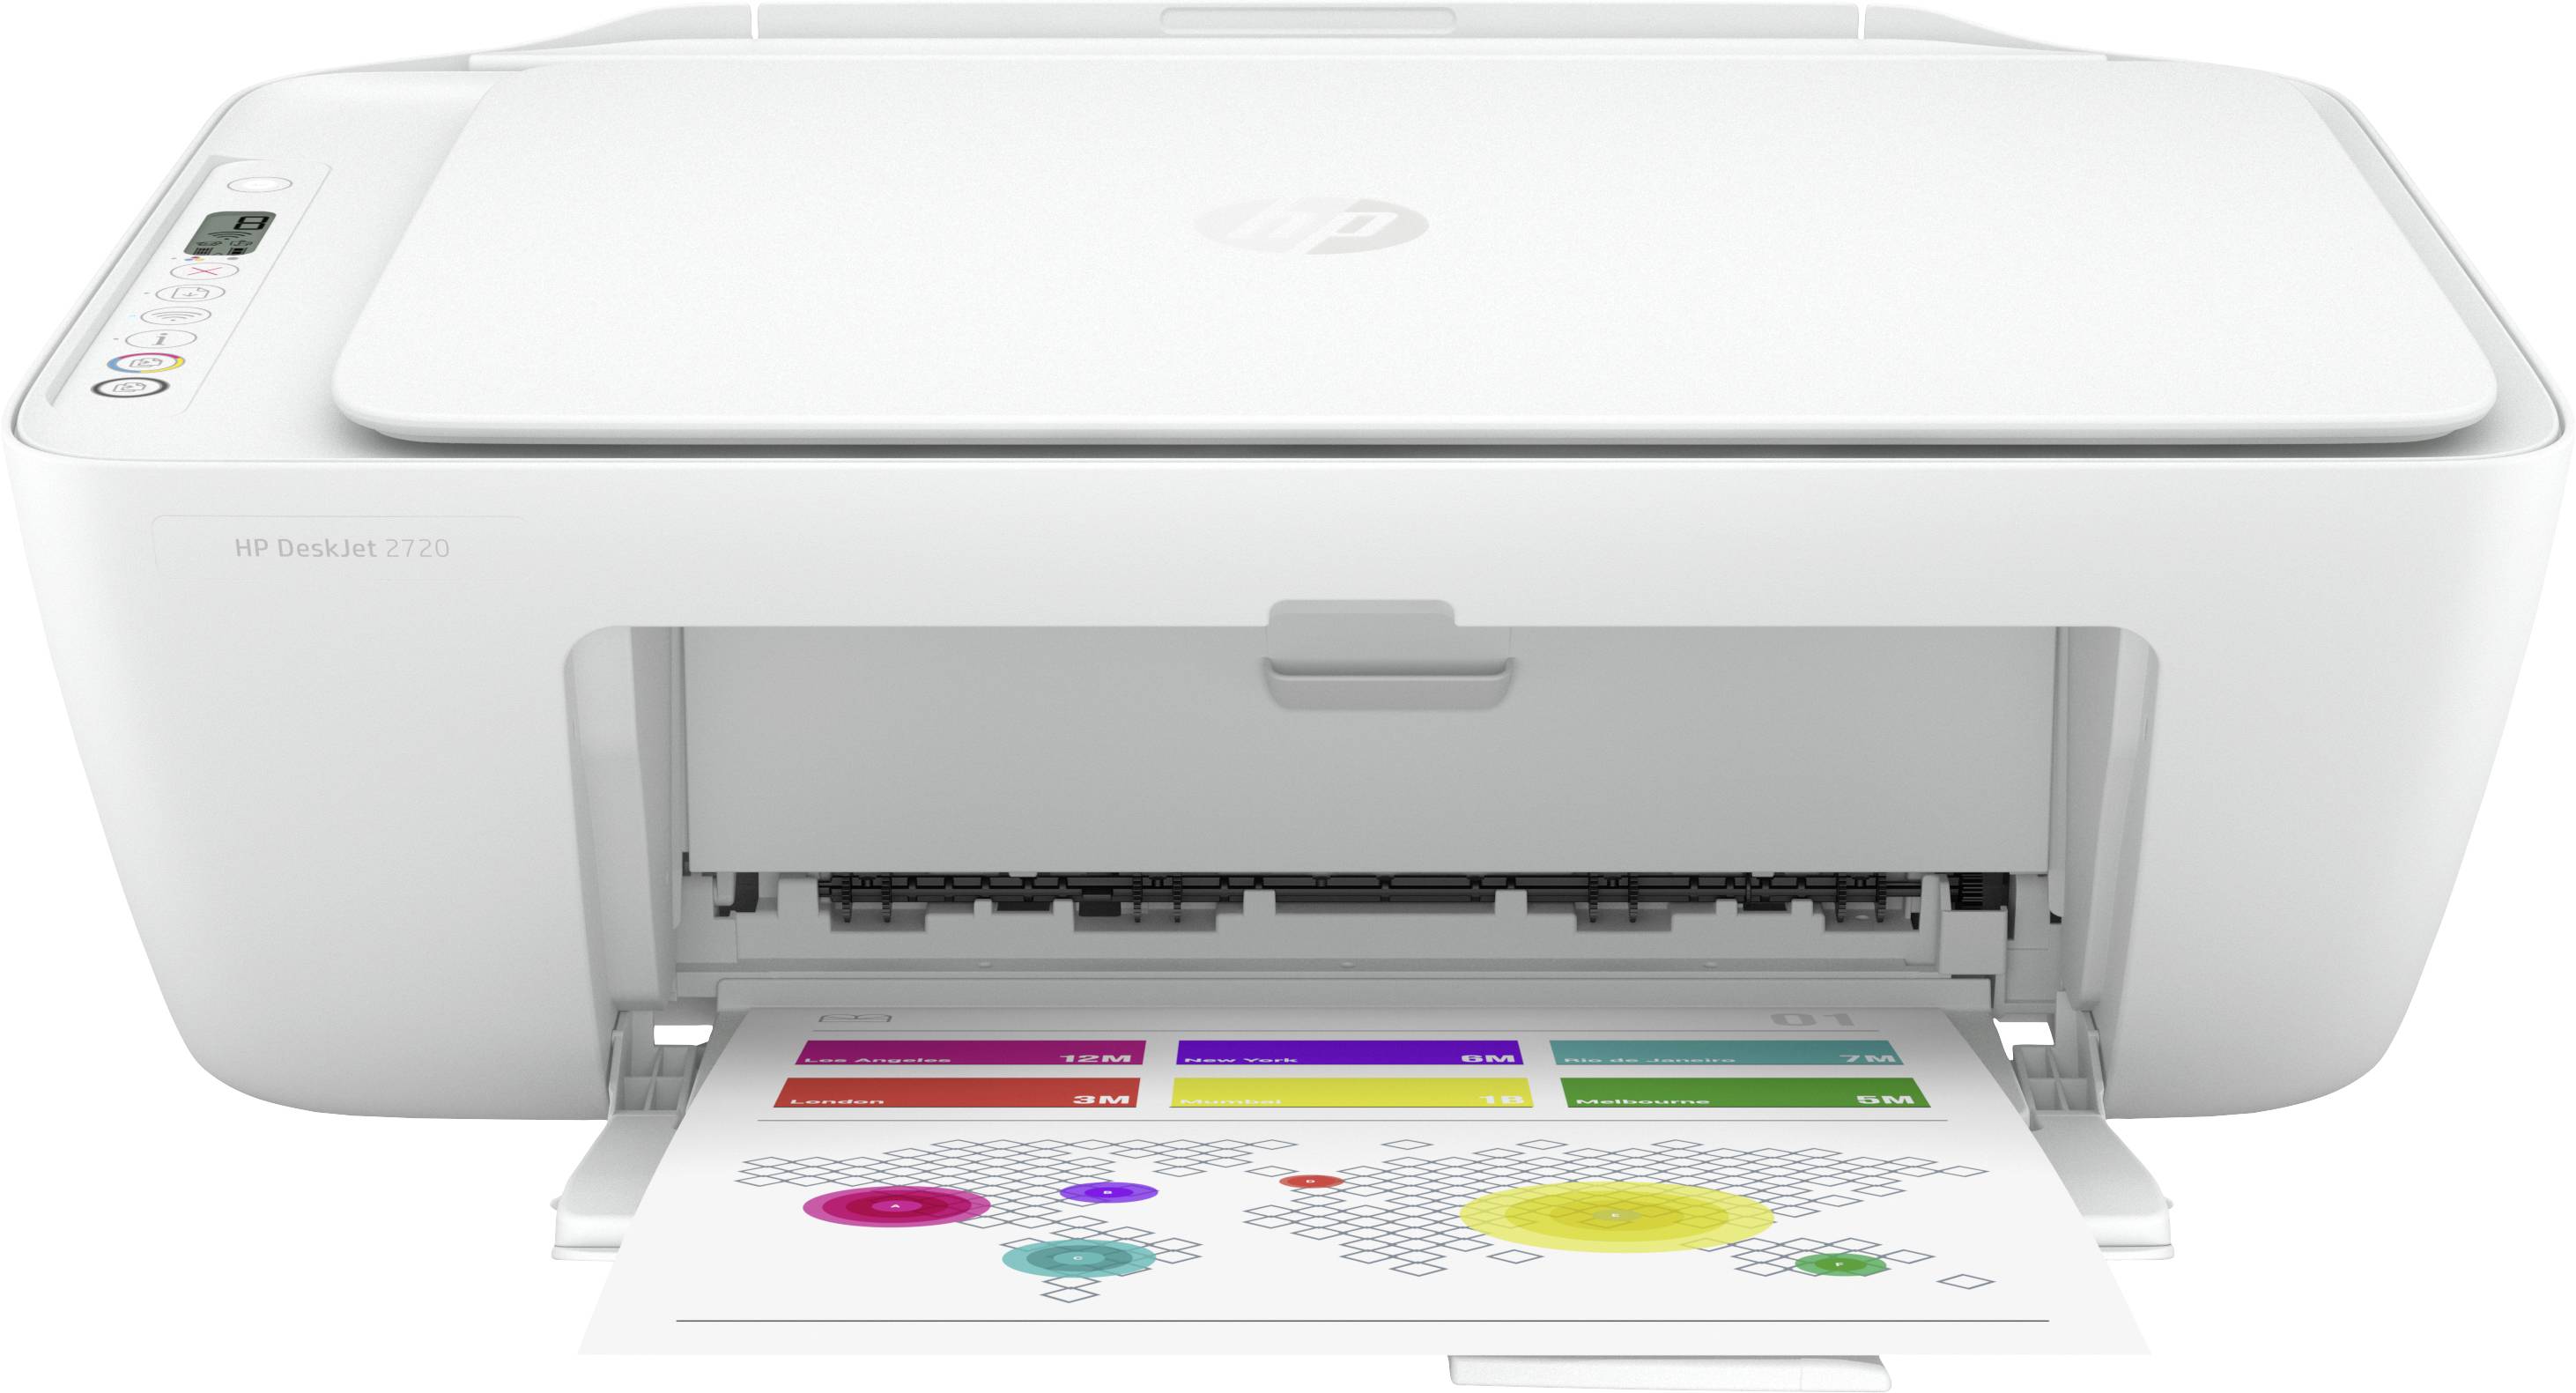 Misbruge Inspicere Glat HP DeskJet 2720 All-in-One Multifunktionsprinter A4 Printer, scanner,  kopimaskine WLAN | Conradelektronik.dk